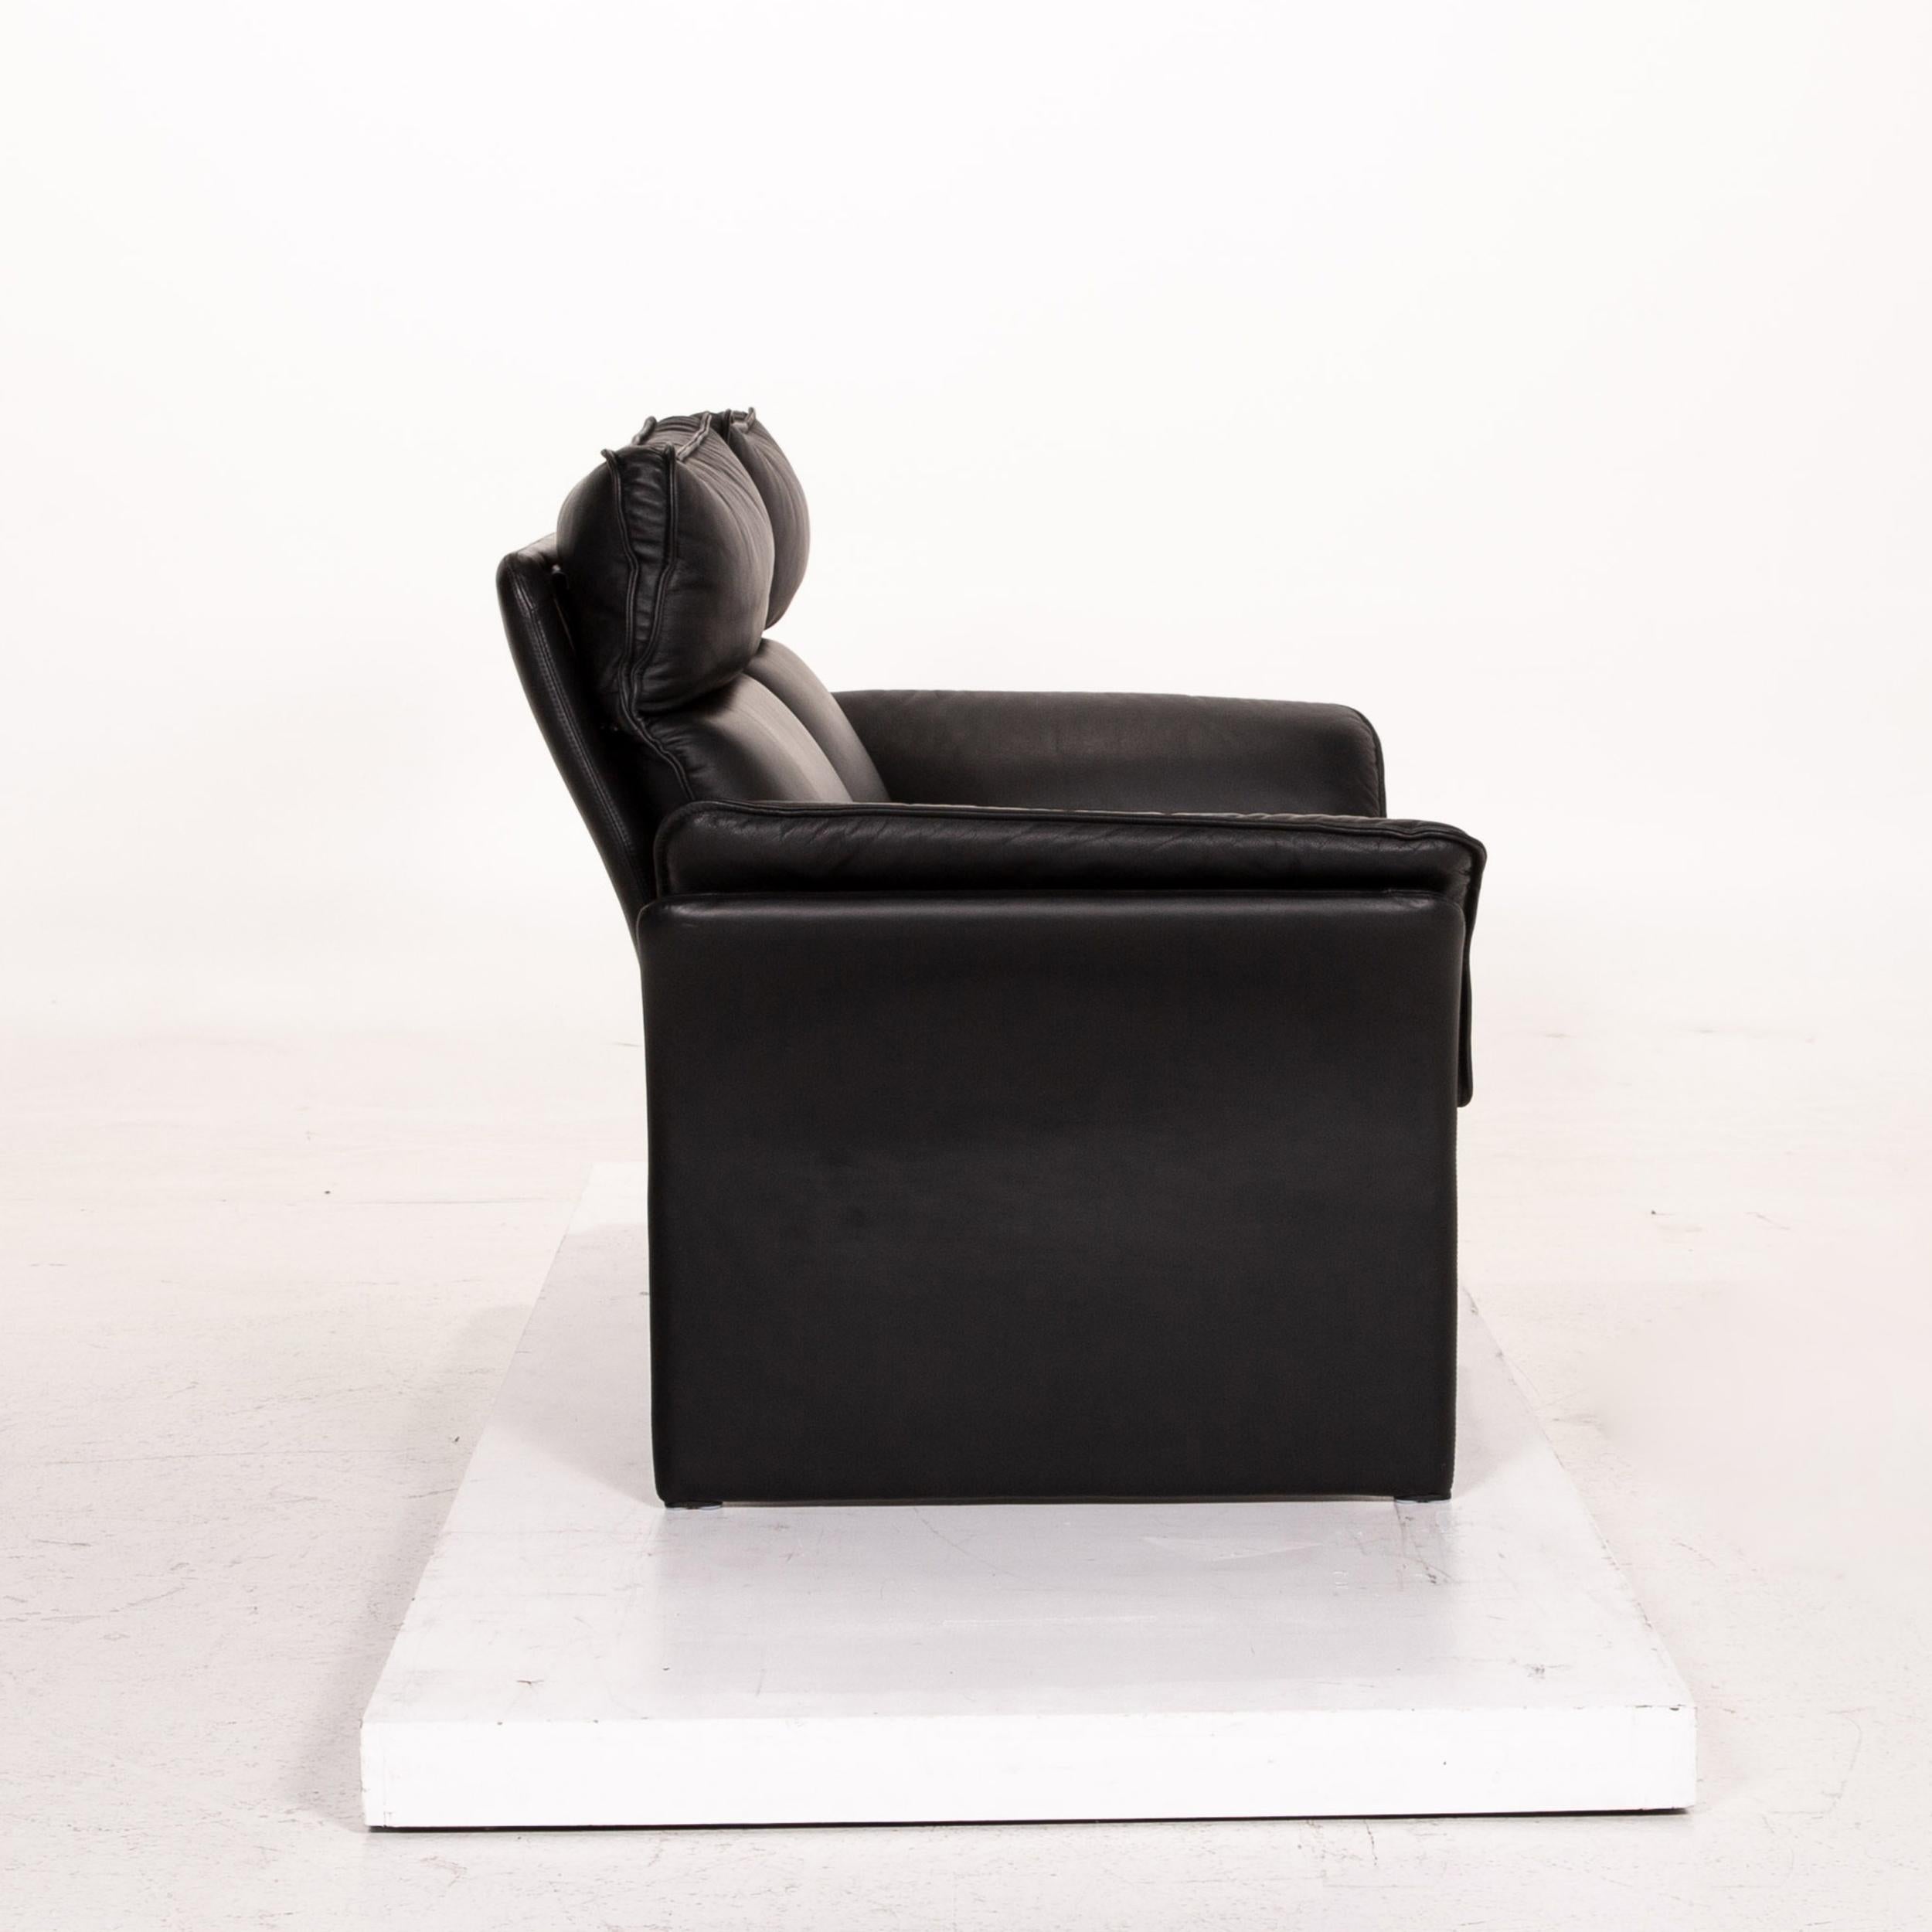 Three-Point Scala Leather Sofa Set Black 1 Three-Seat 1 Two-Seat 9